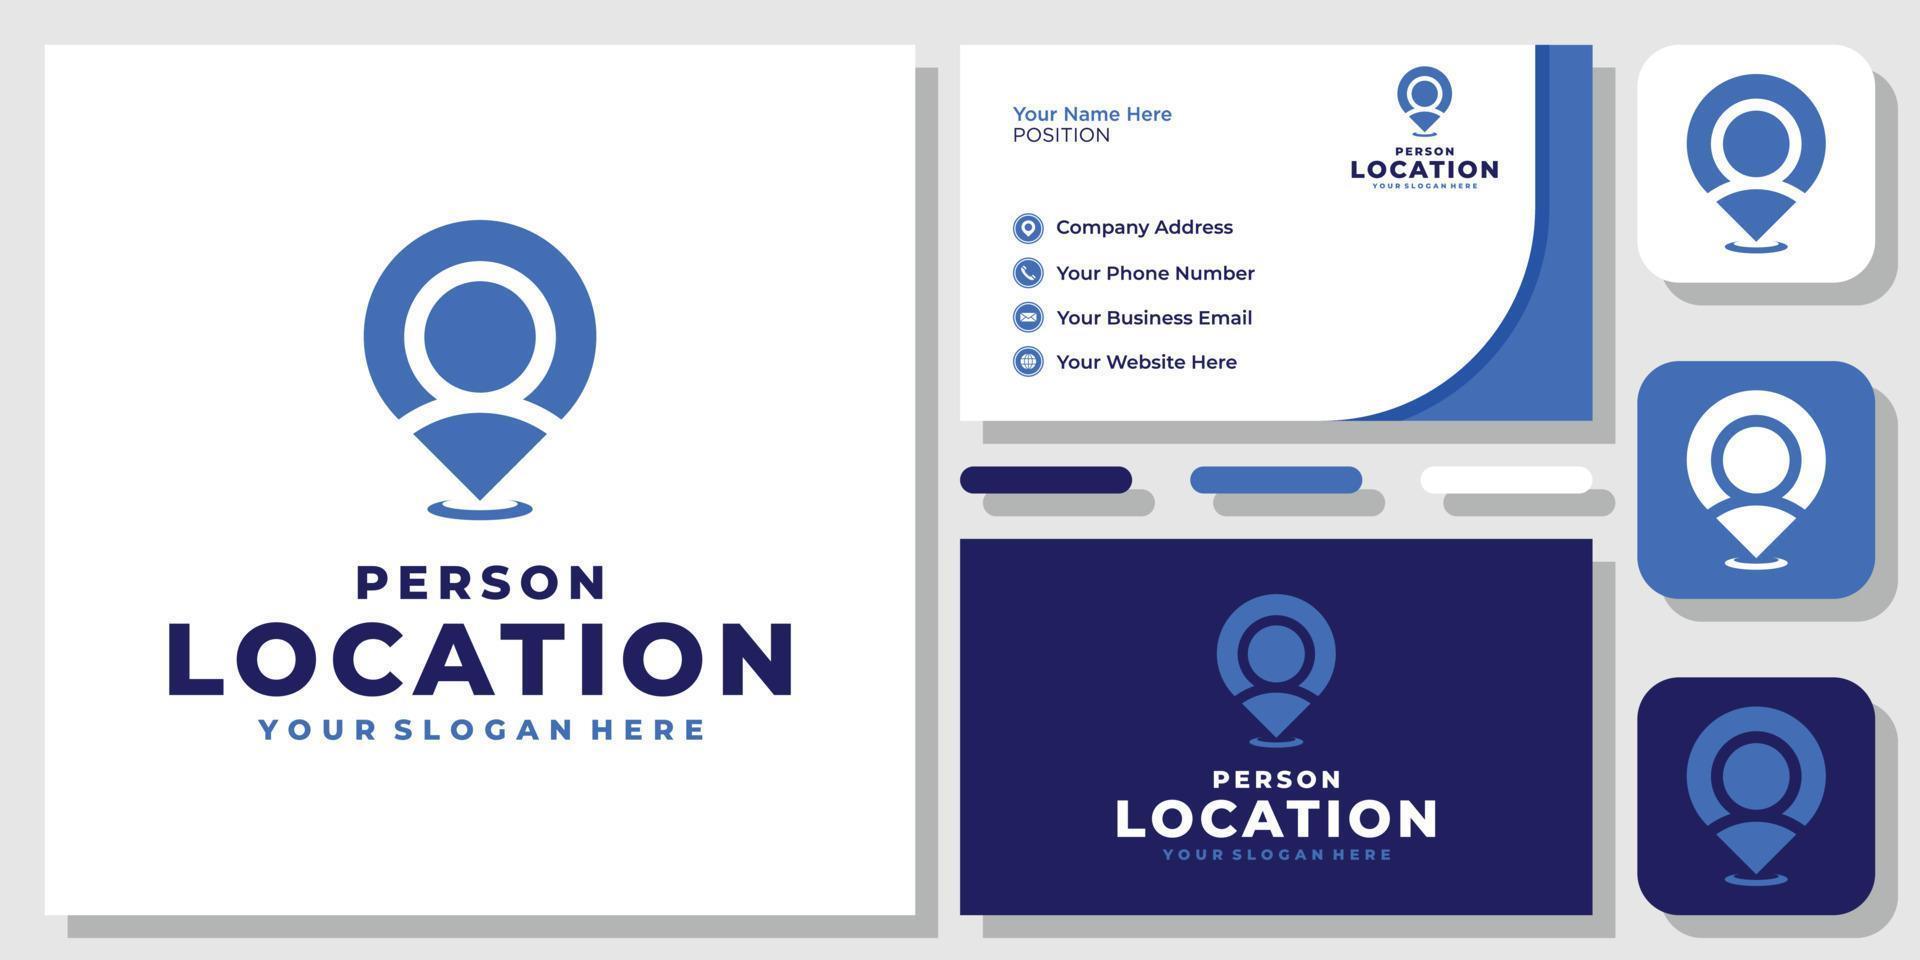 personas ubicación persona pin mapa humano encontrar lugar de internet gps diseño de logotipo con plantilla de tarjeta de visita vector